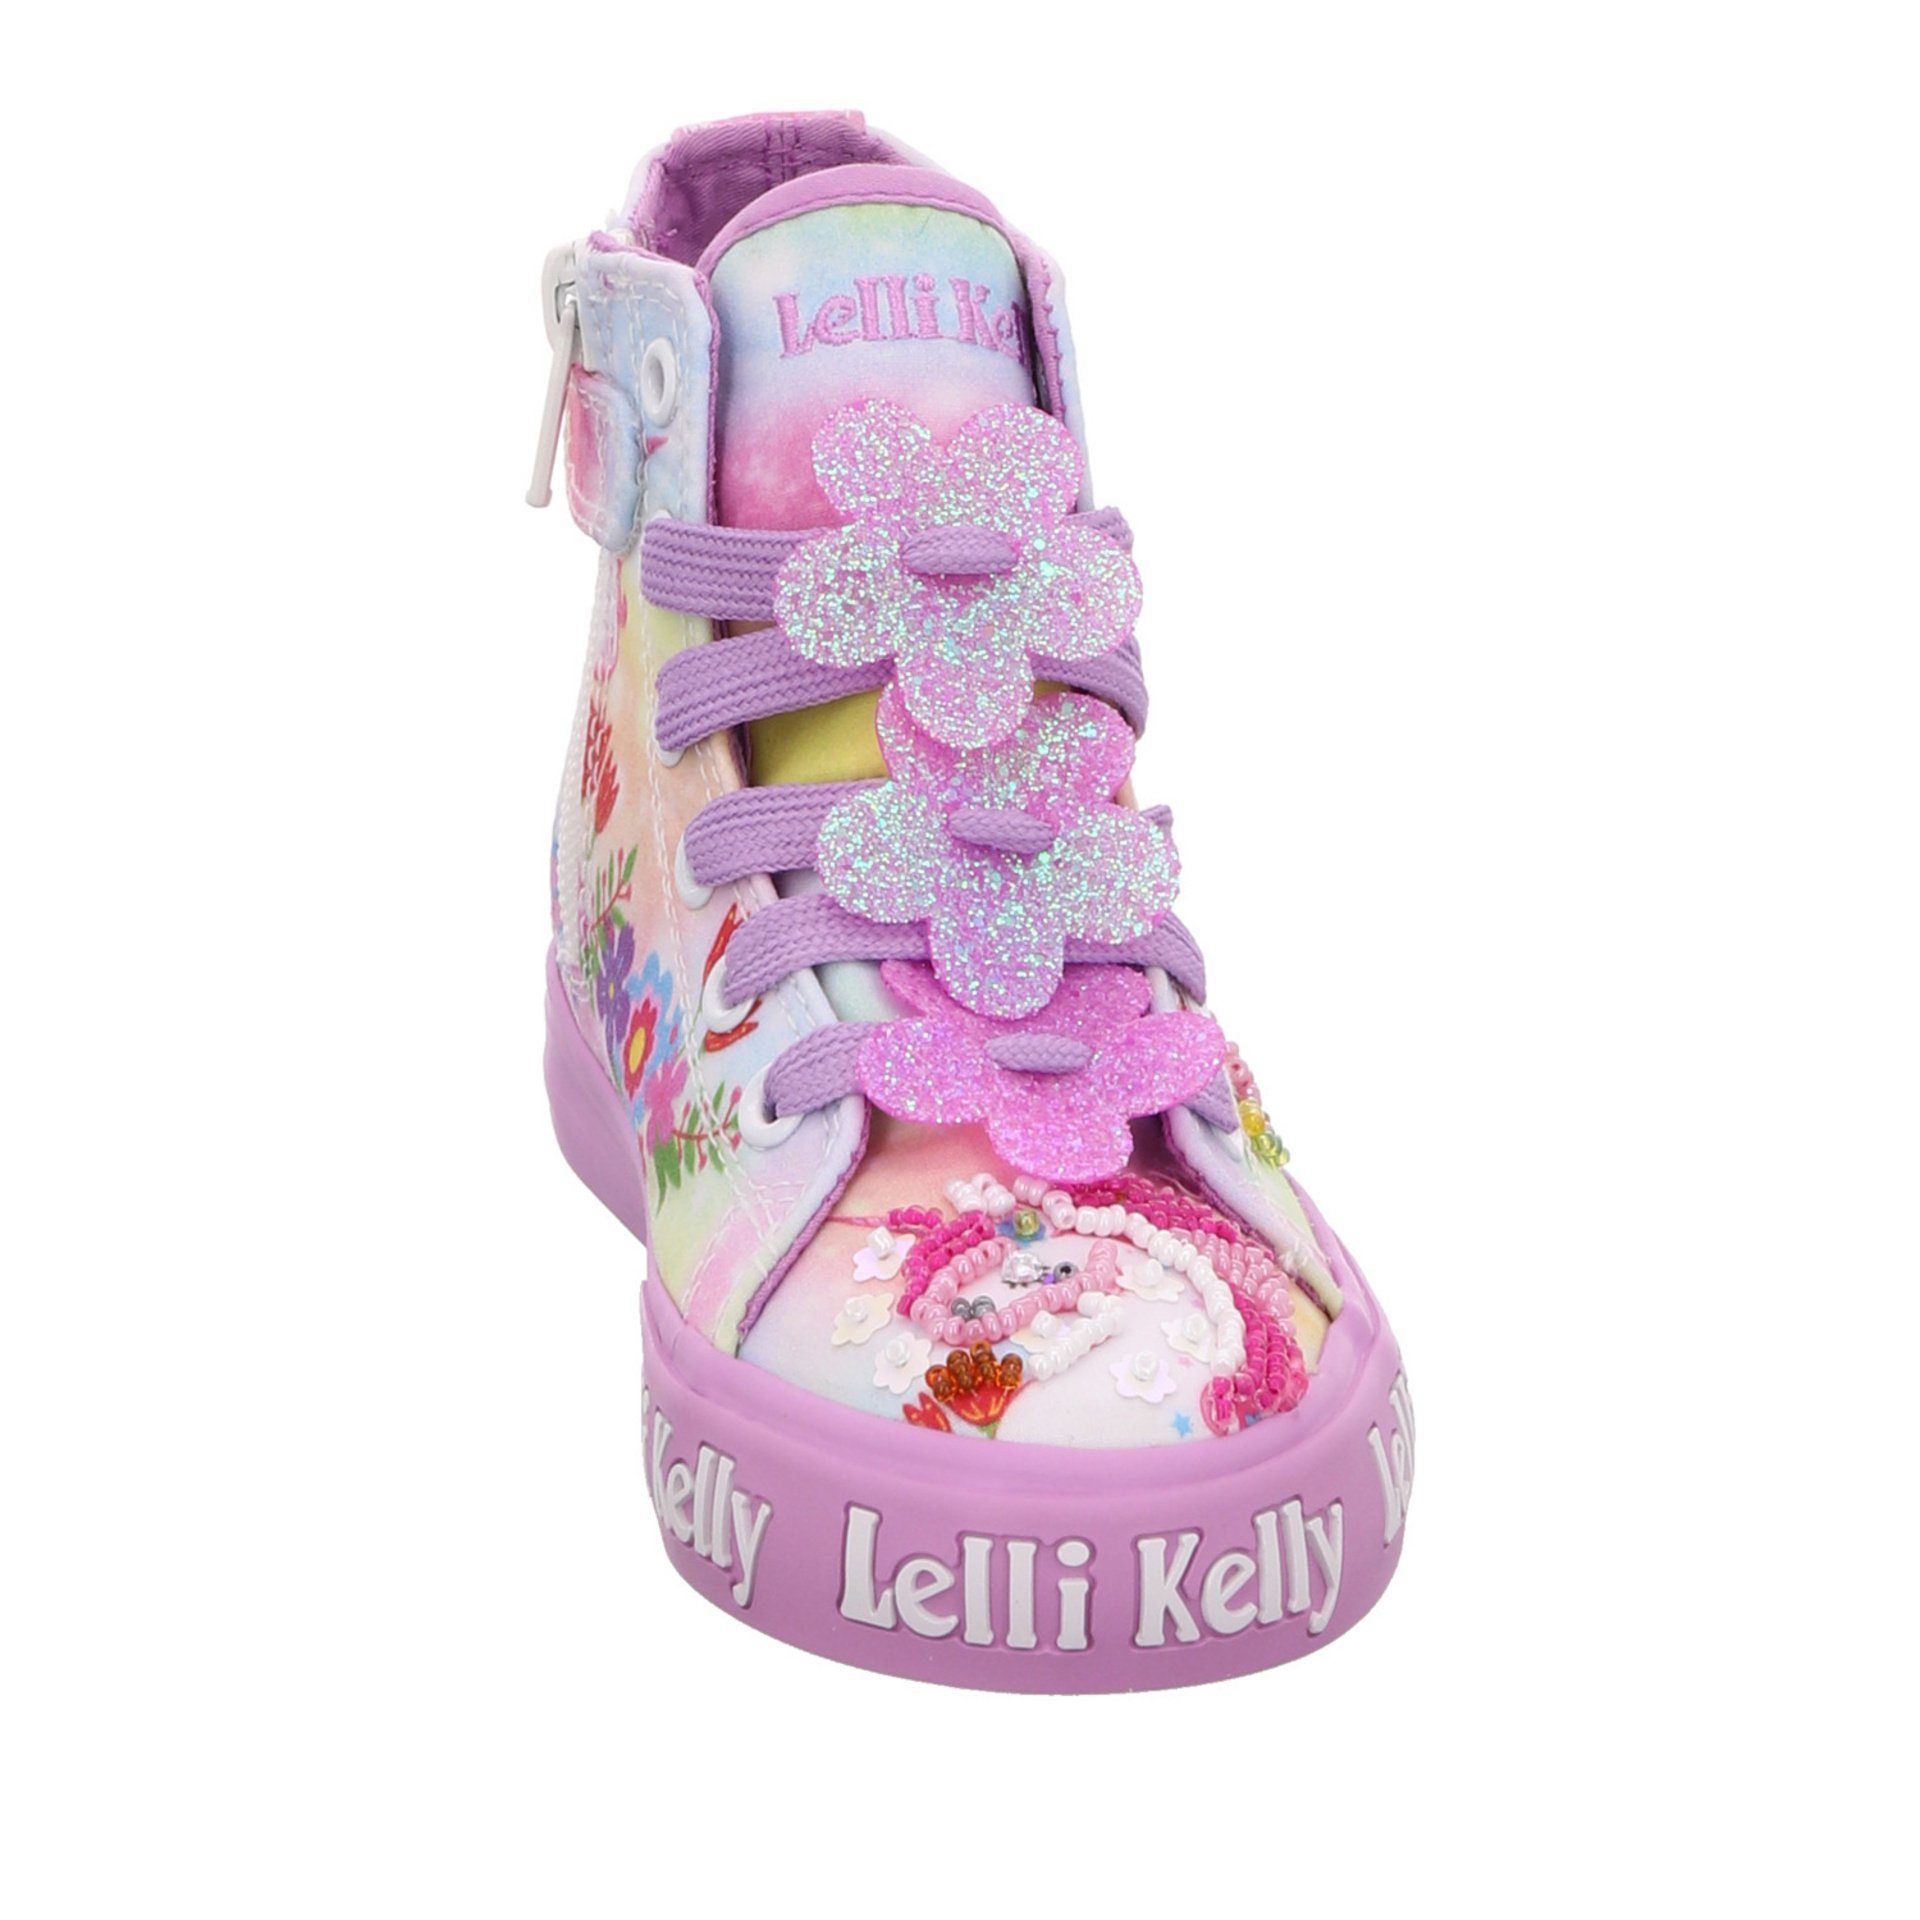 Lelli Kelly Mädchen Sneaker rot+lila Stiefelette Unicorn Schuhe Kombi Textil Sneaker sonst